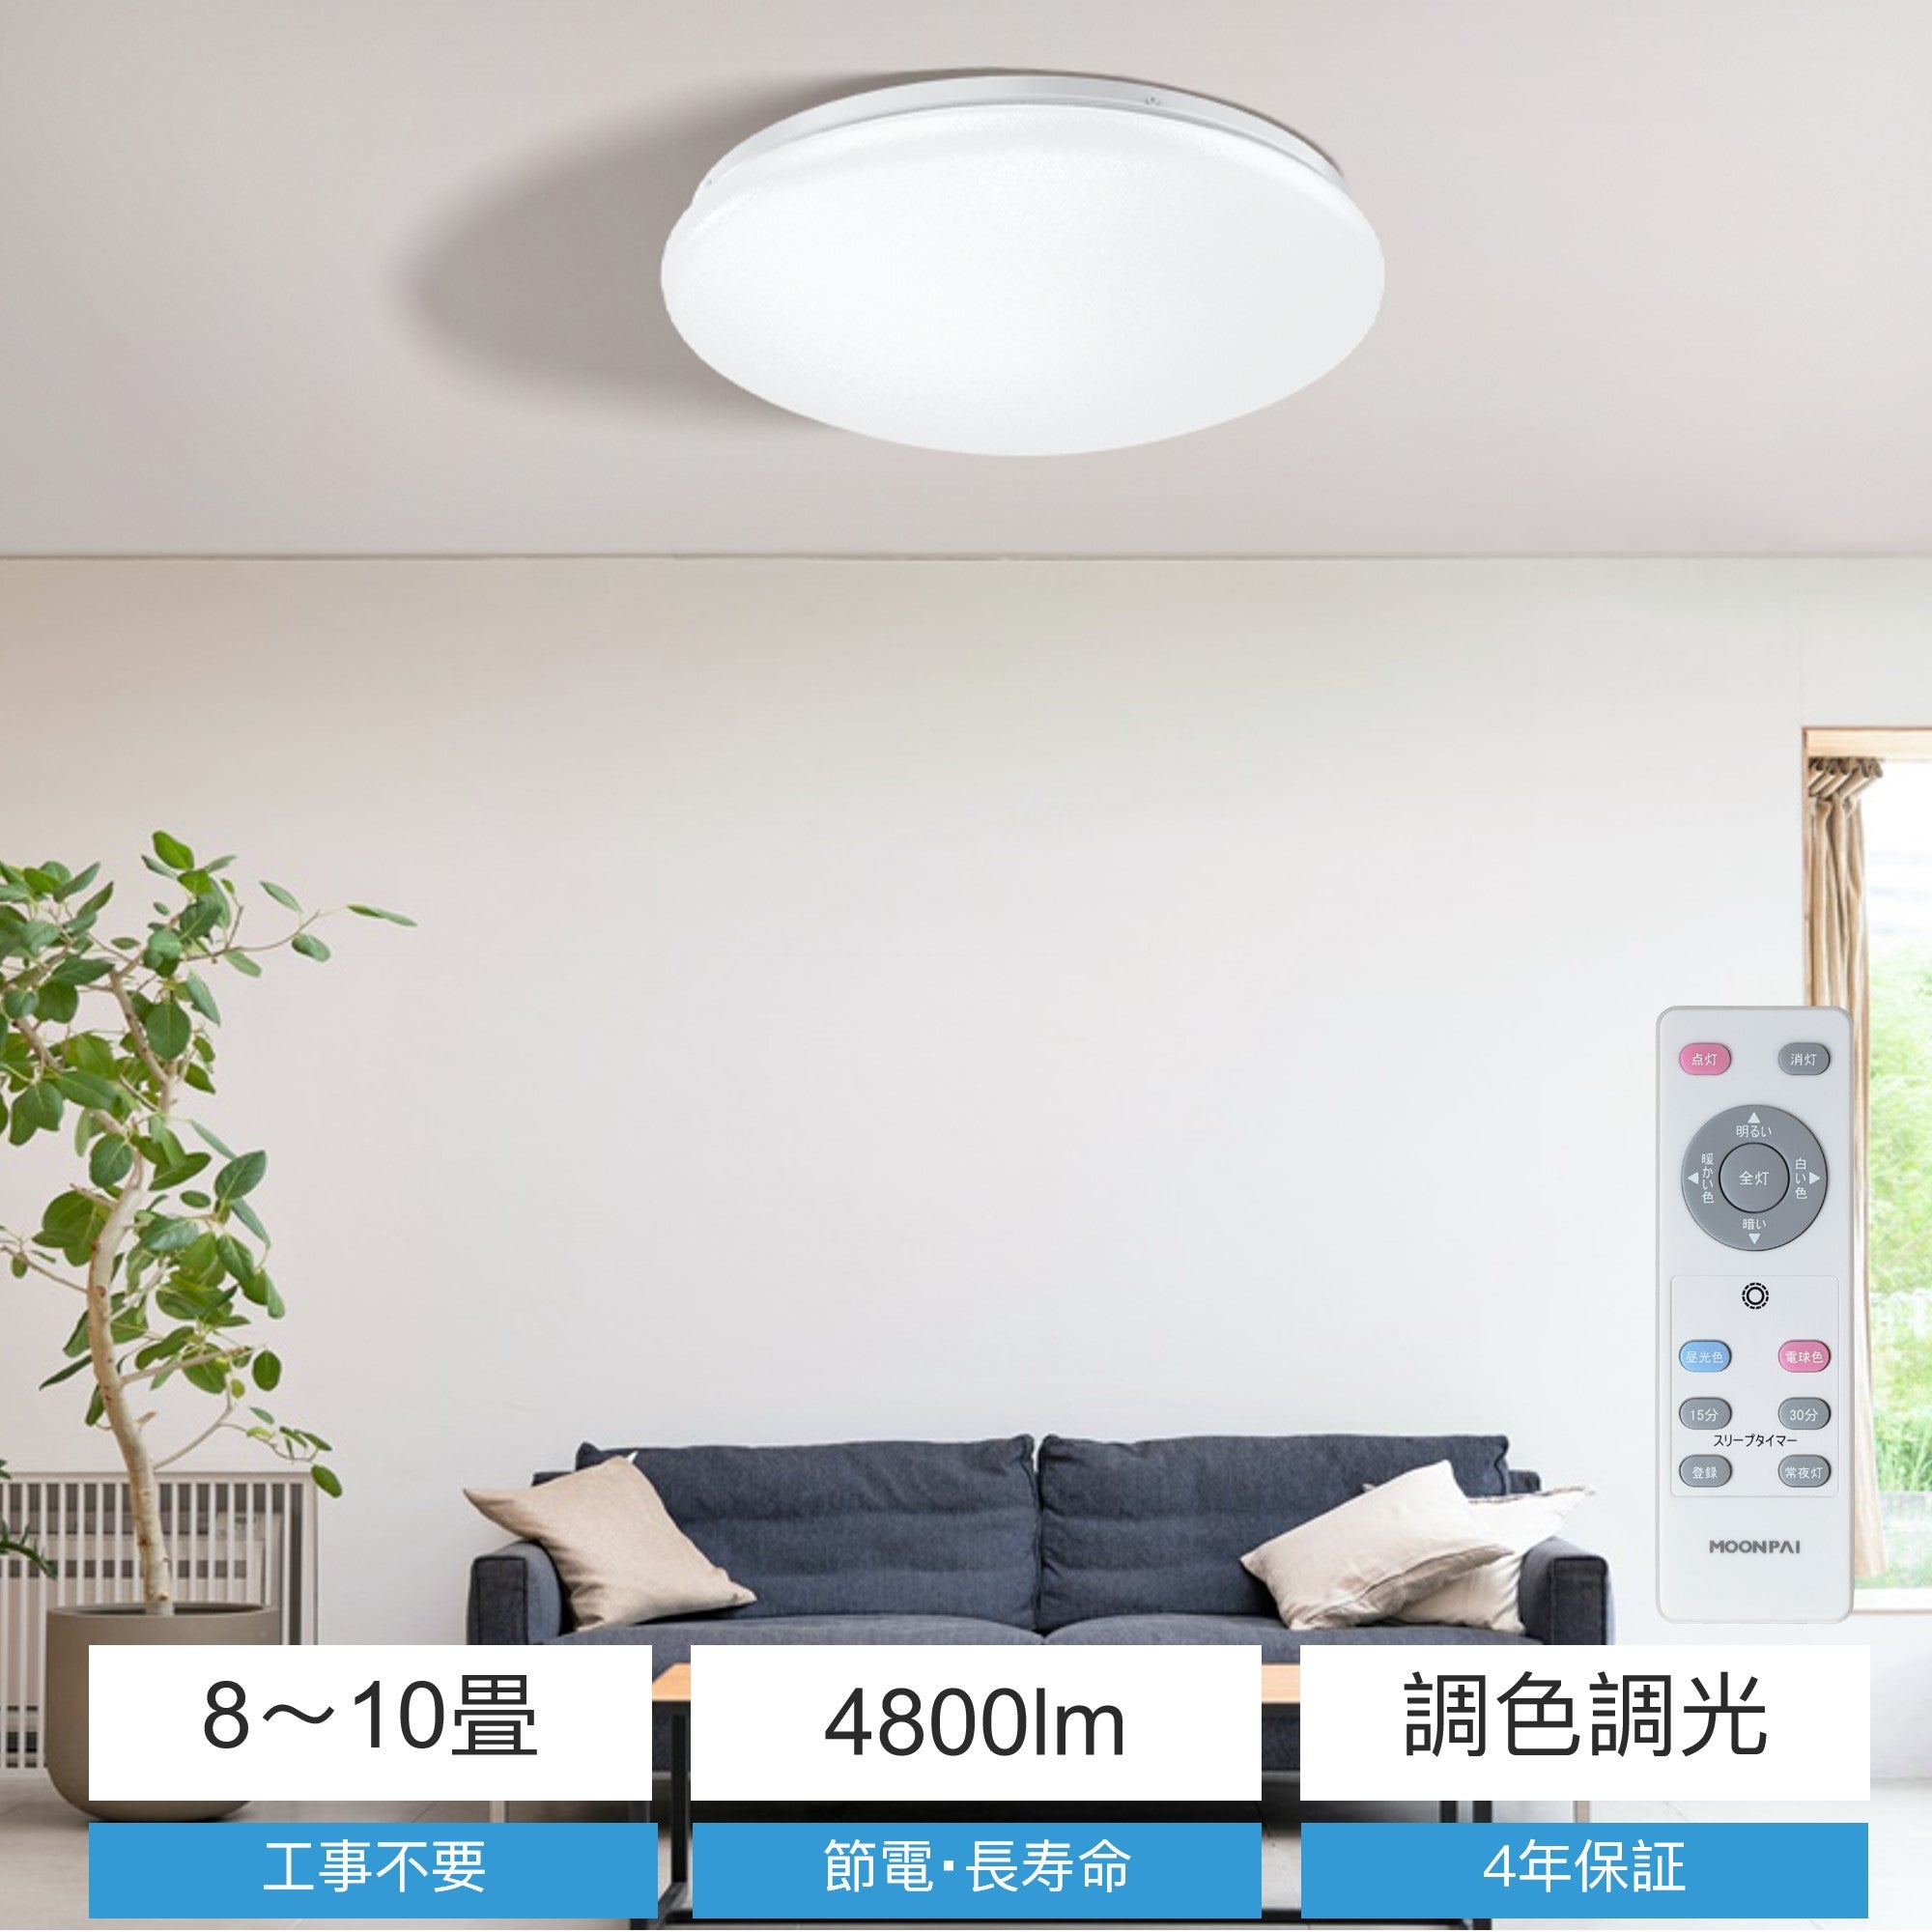 日本最大の 【2個セット】LEDシーリングライト 8-10畳 調光調色